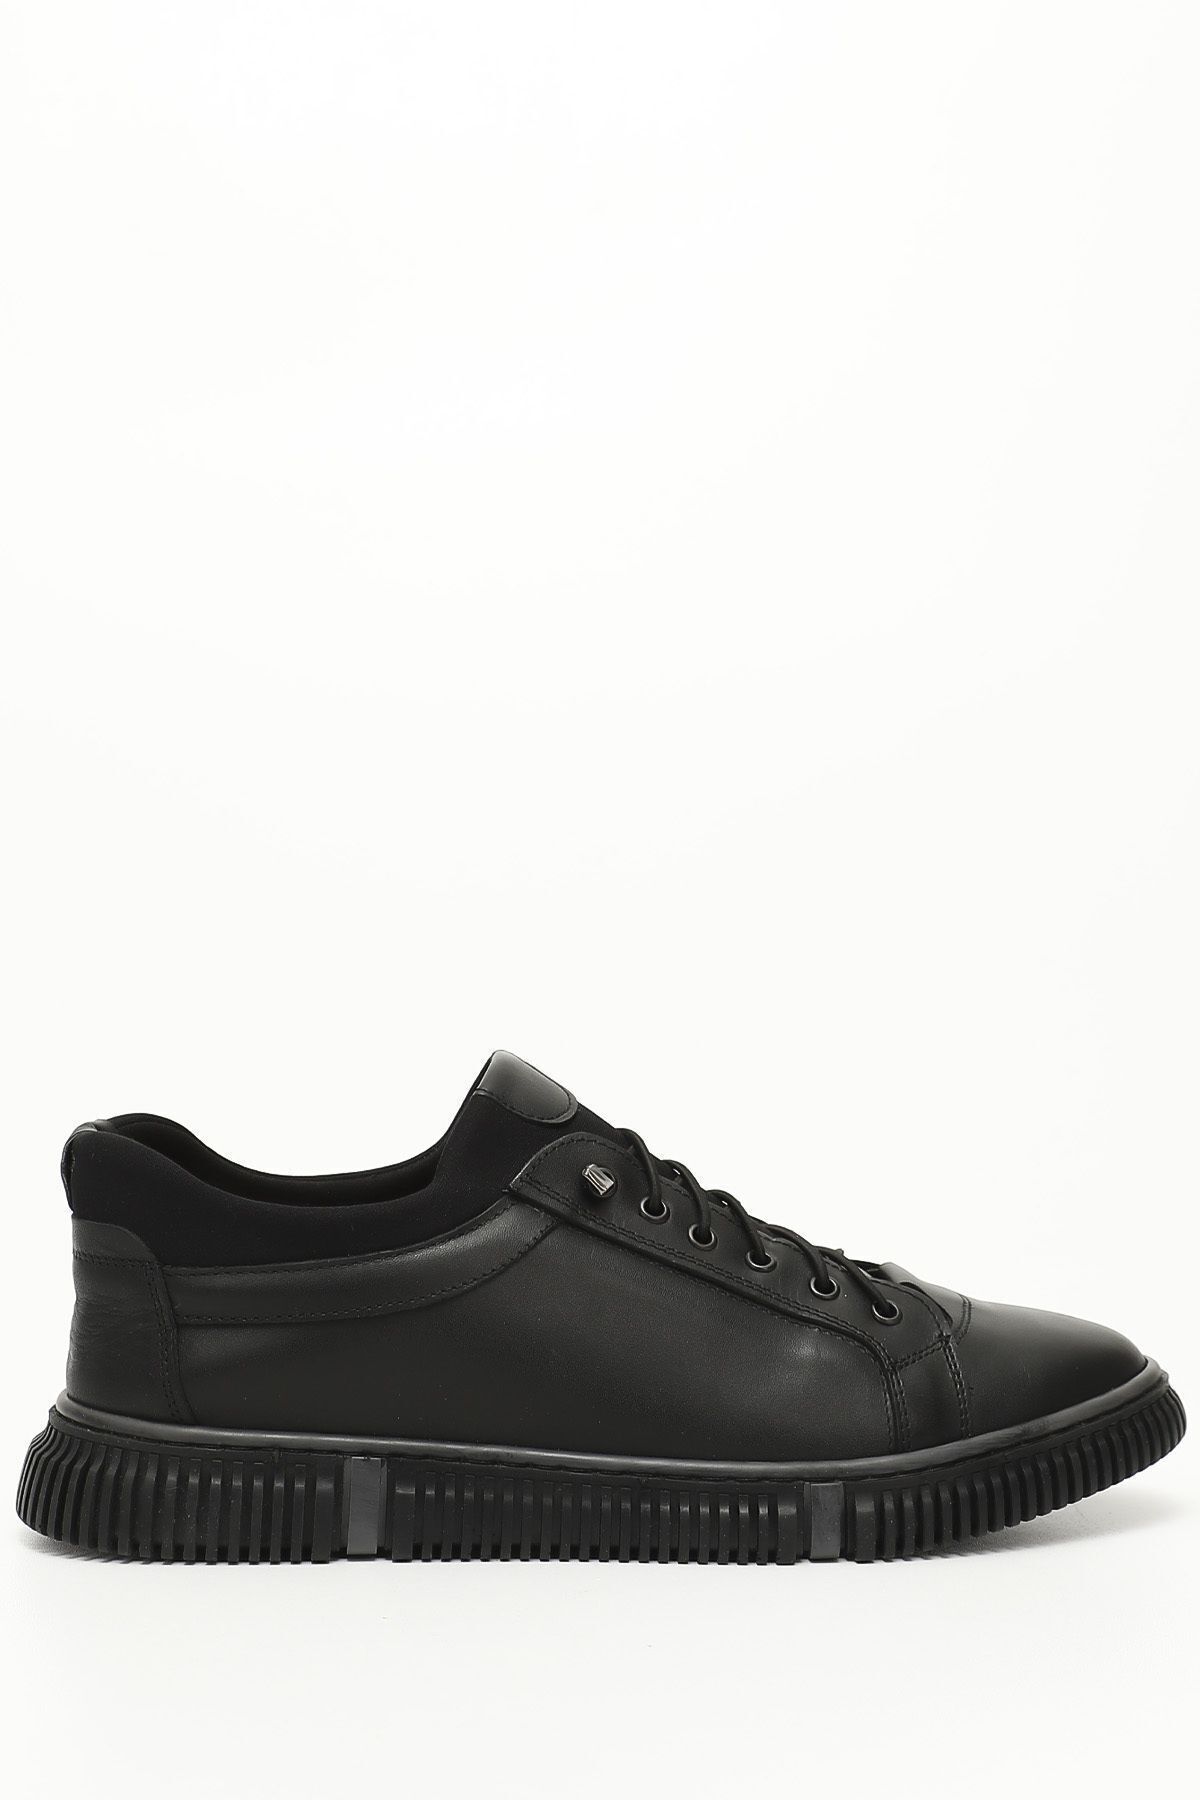 GÖNDERİ(R) Siyah Gön Hakiki Deri Yuvarlak Burun Bağcıklı Günlük Erkek Sneaker 01388